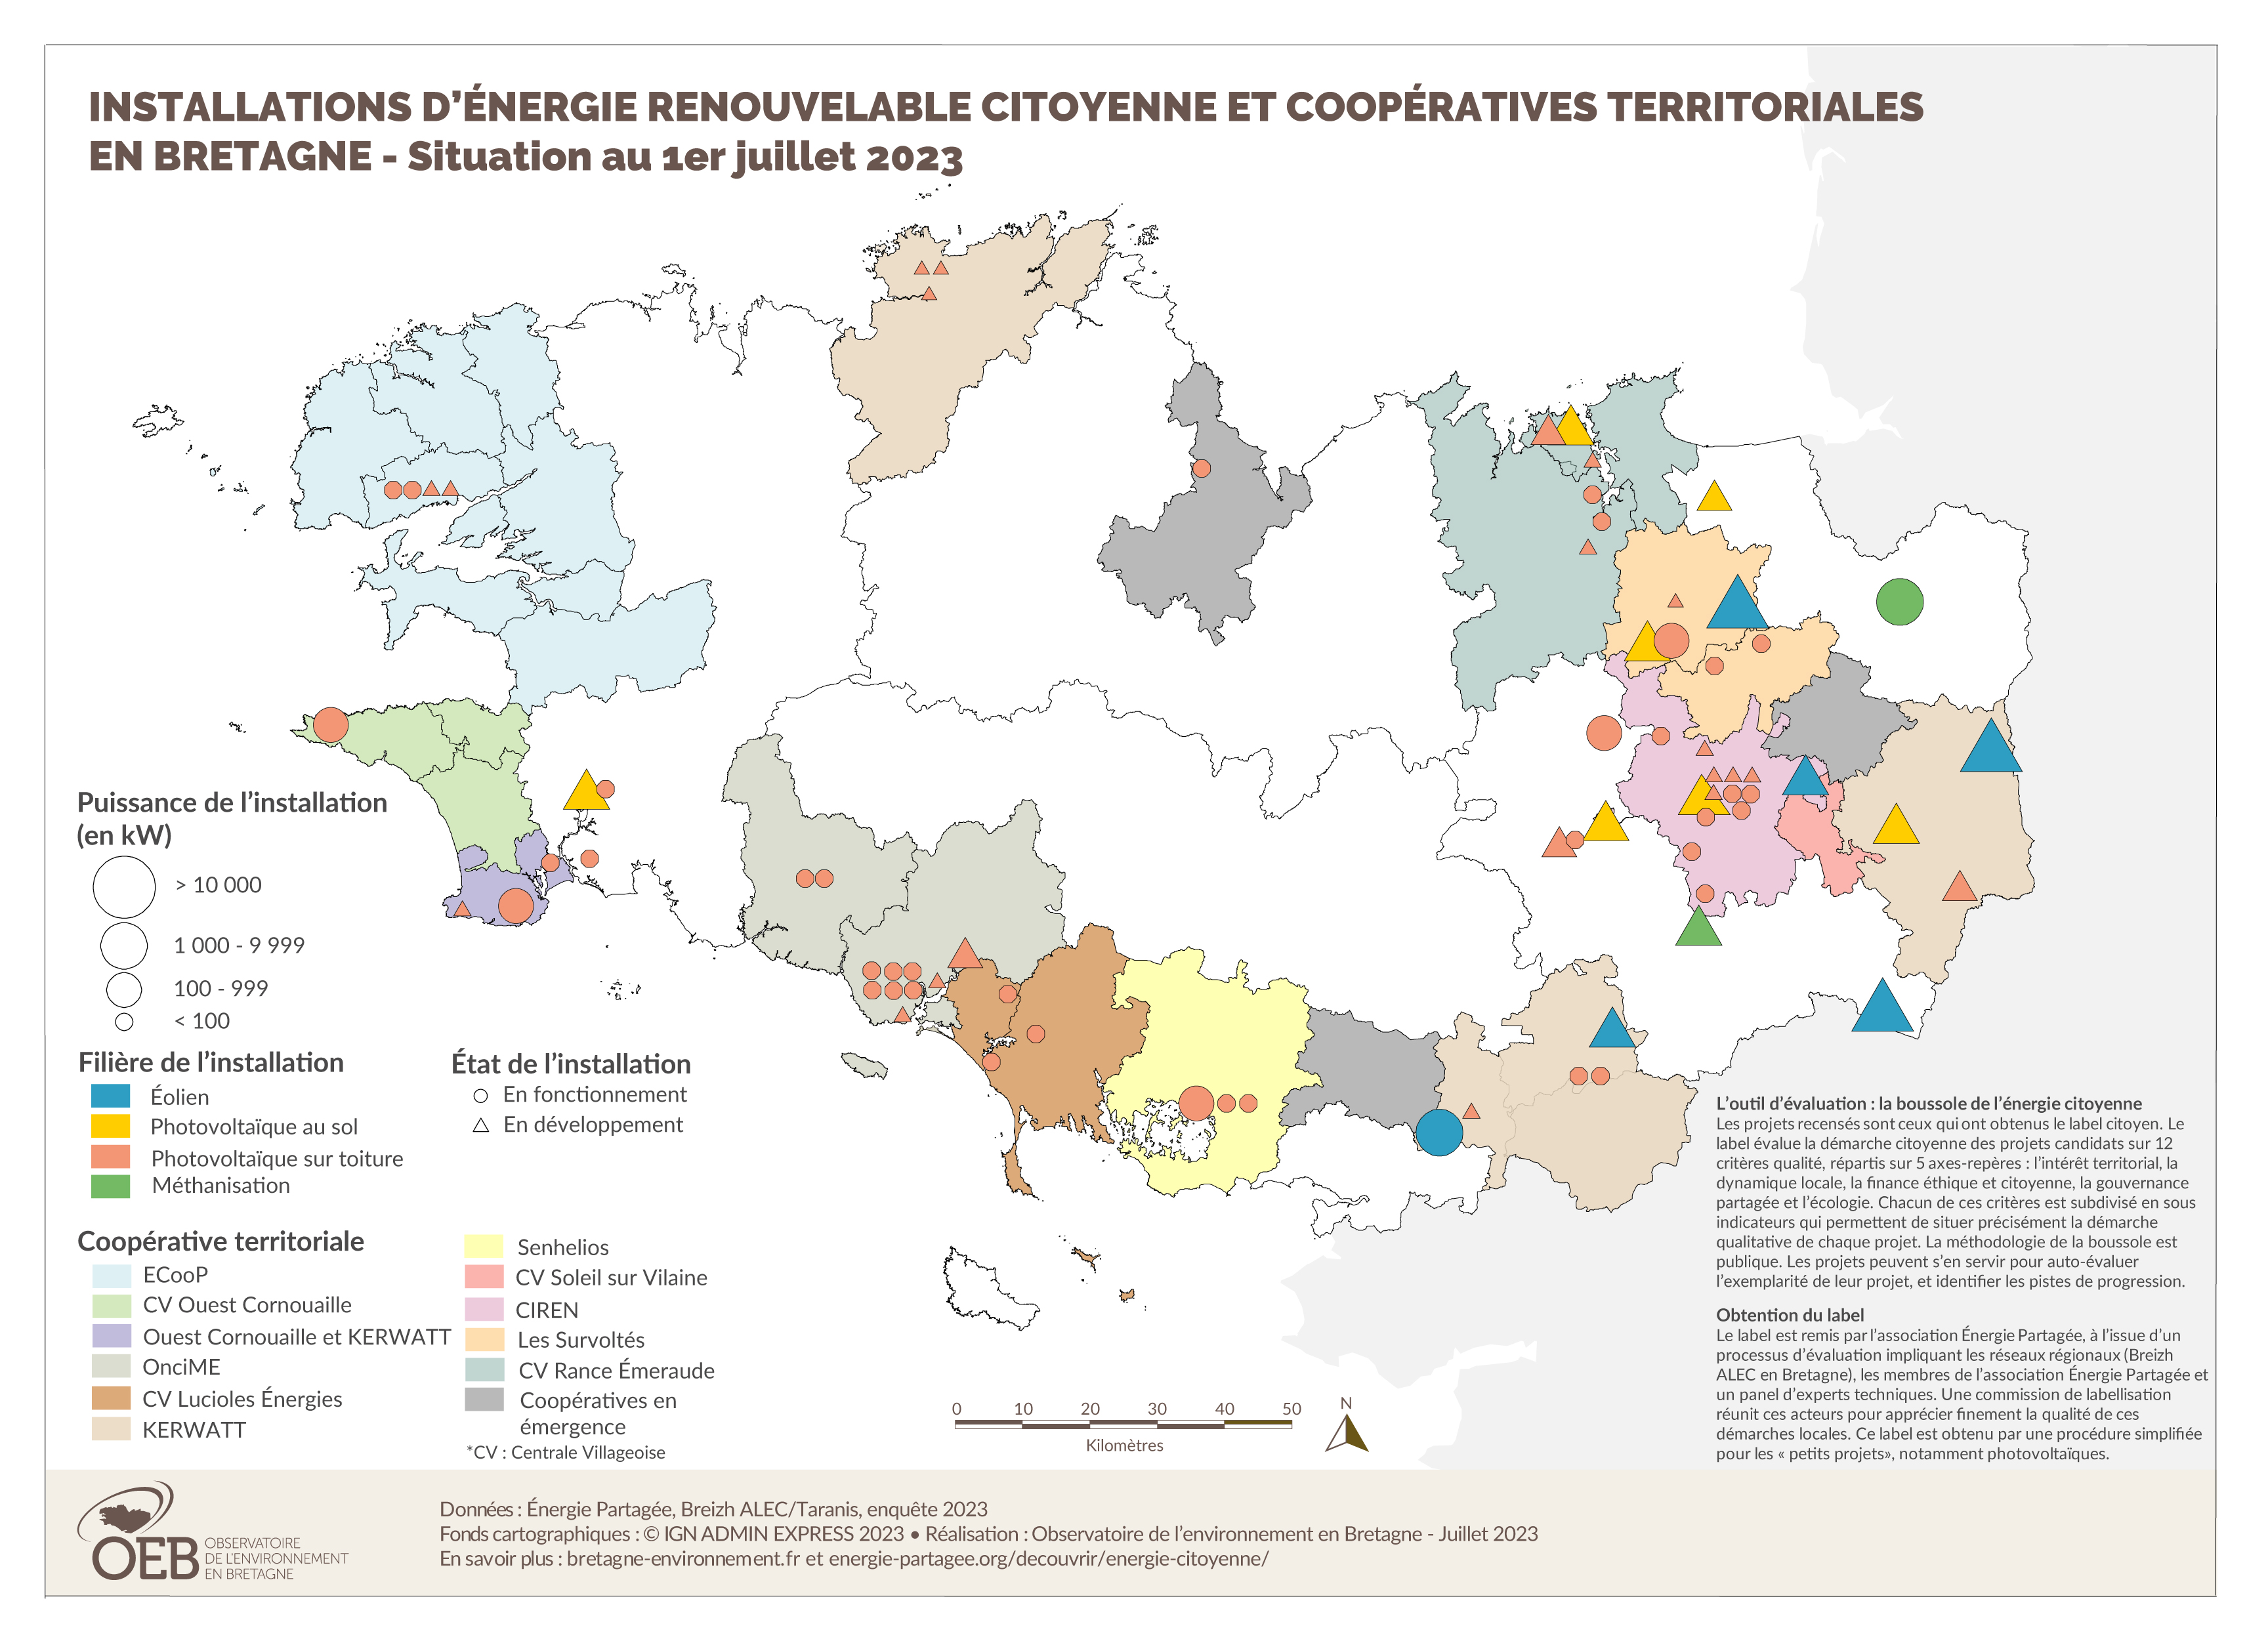 Installations d'énergie renouvelable citoyenne et coopératives territoriales - Situation au 1er juillet 2023